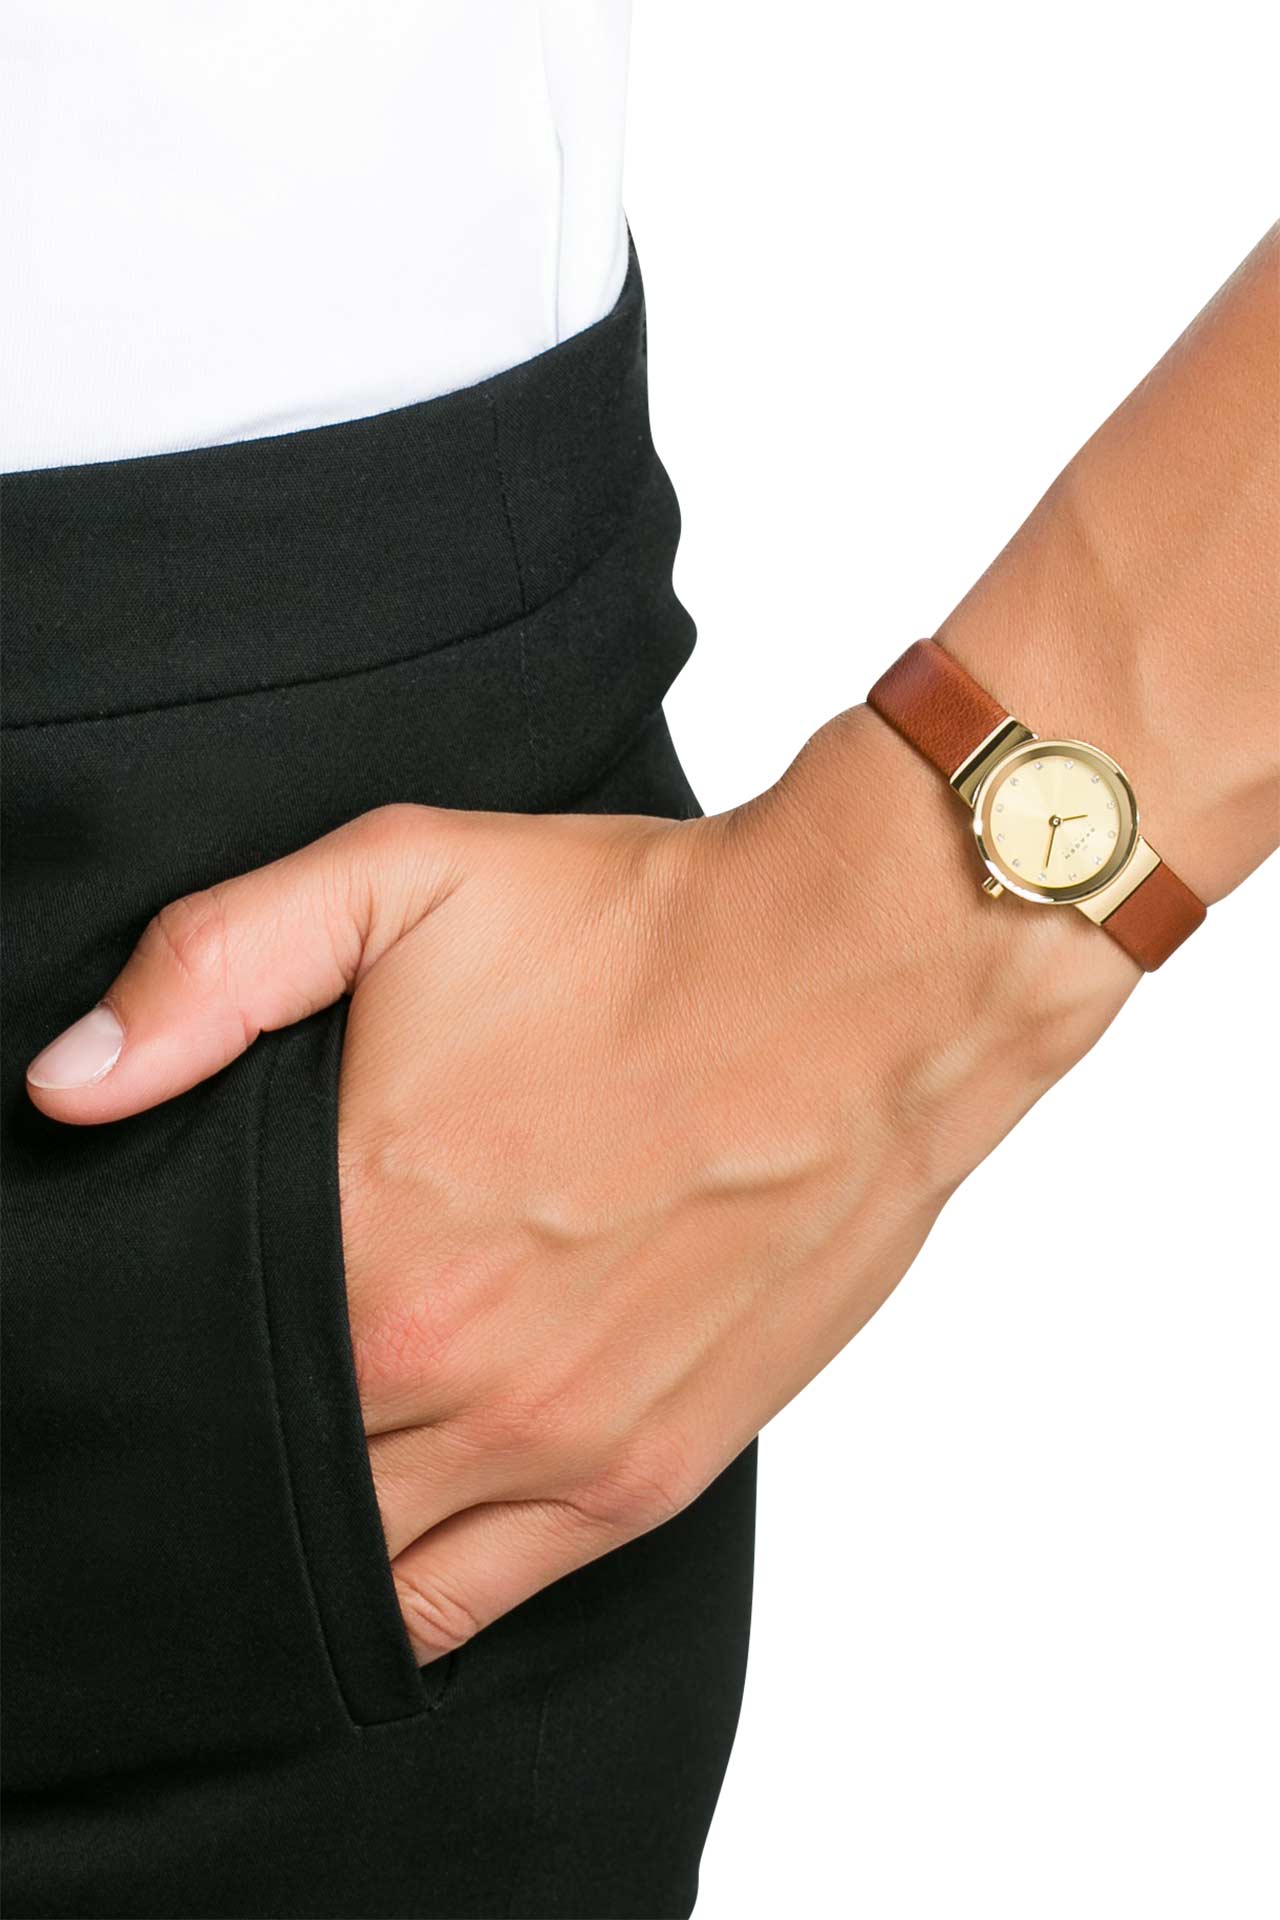 Armbanduhr 'Freja-mini' gold-braun - SKAGEN DENMARK » günstig online kaufen